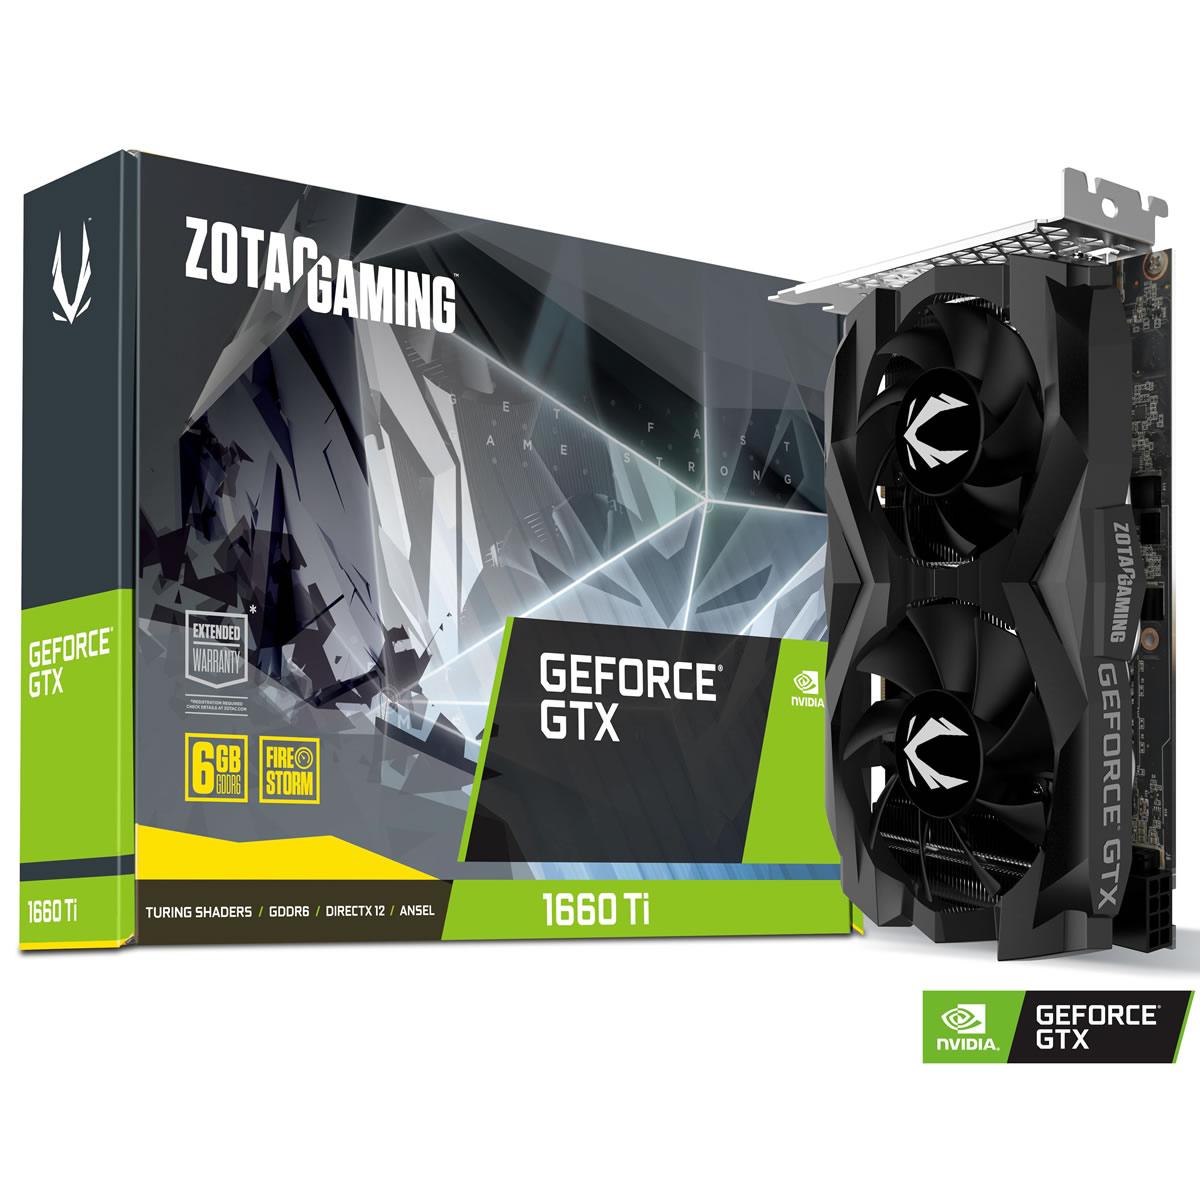 Zotac GeForce GTX 1660 Ti 6 GB Gaming